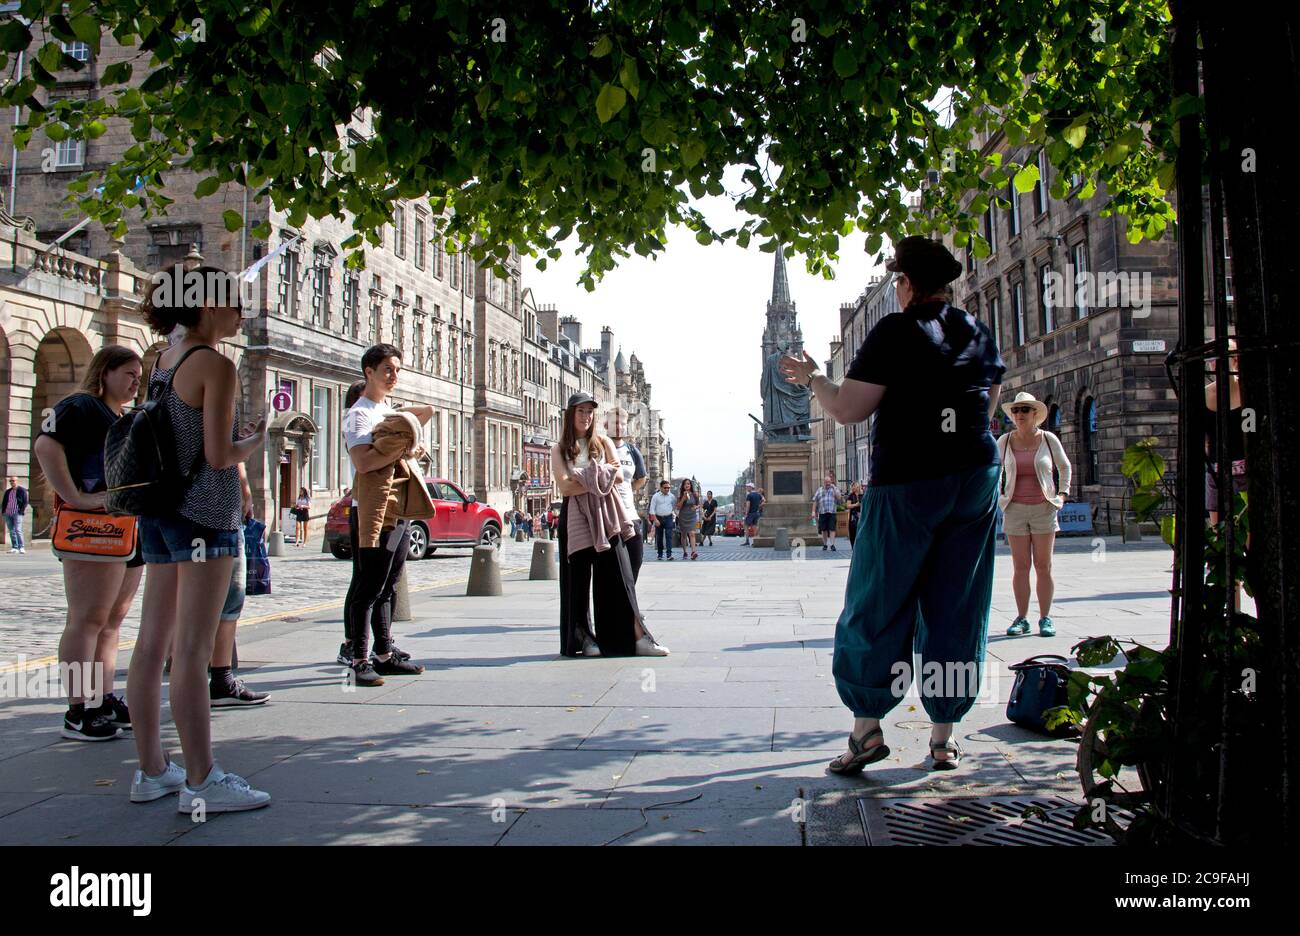 Édimbourg, Écosse, Royaume-Uni. 31 juin 2020. Journée chaude à Édimbourg 22 degrés centigrades à midi avec des rayons de soleil brumeux pour les touristes visitant le centre-ville pour une visite à pied. Banque D'Images